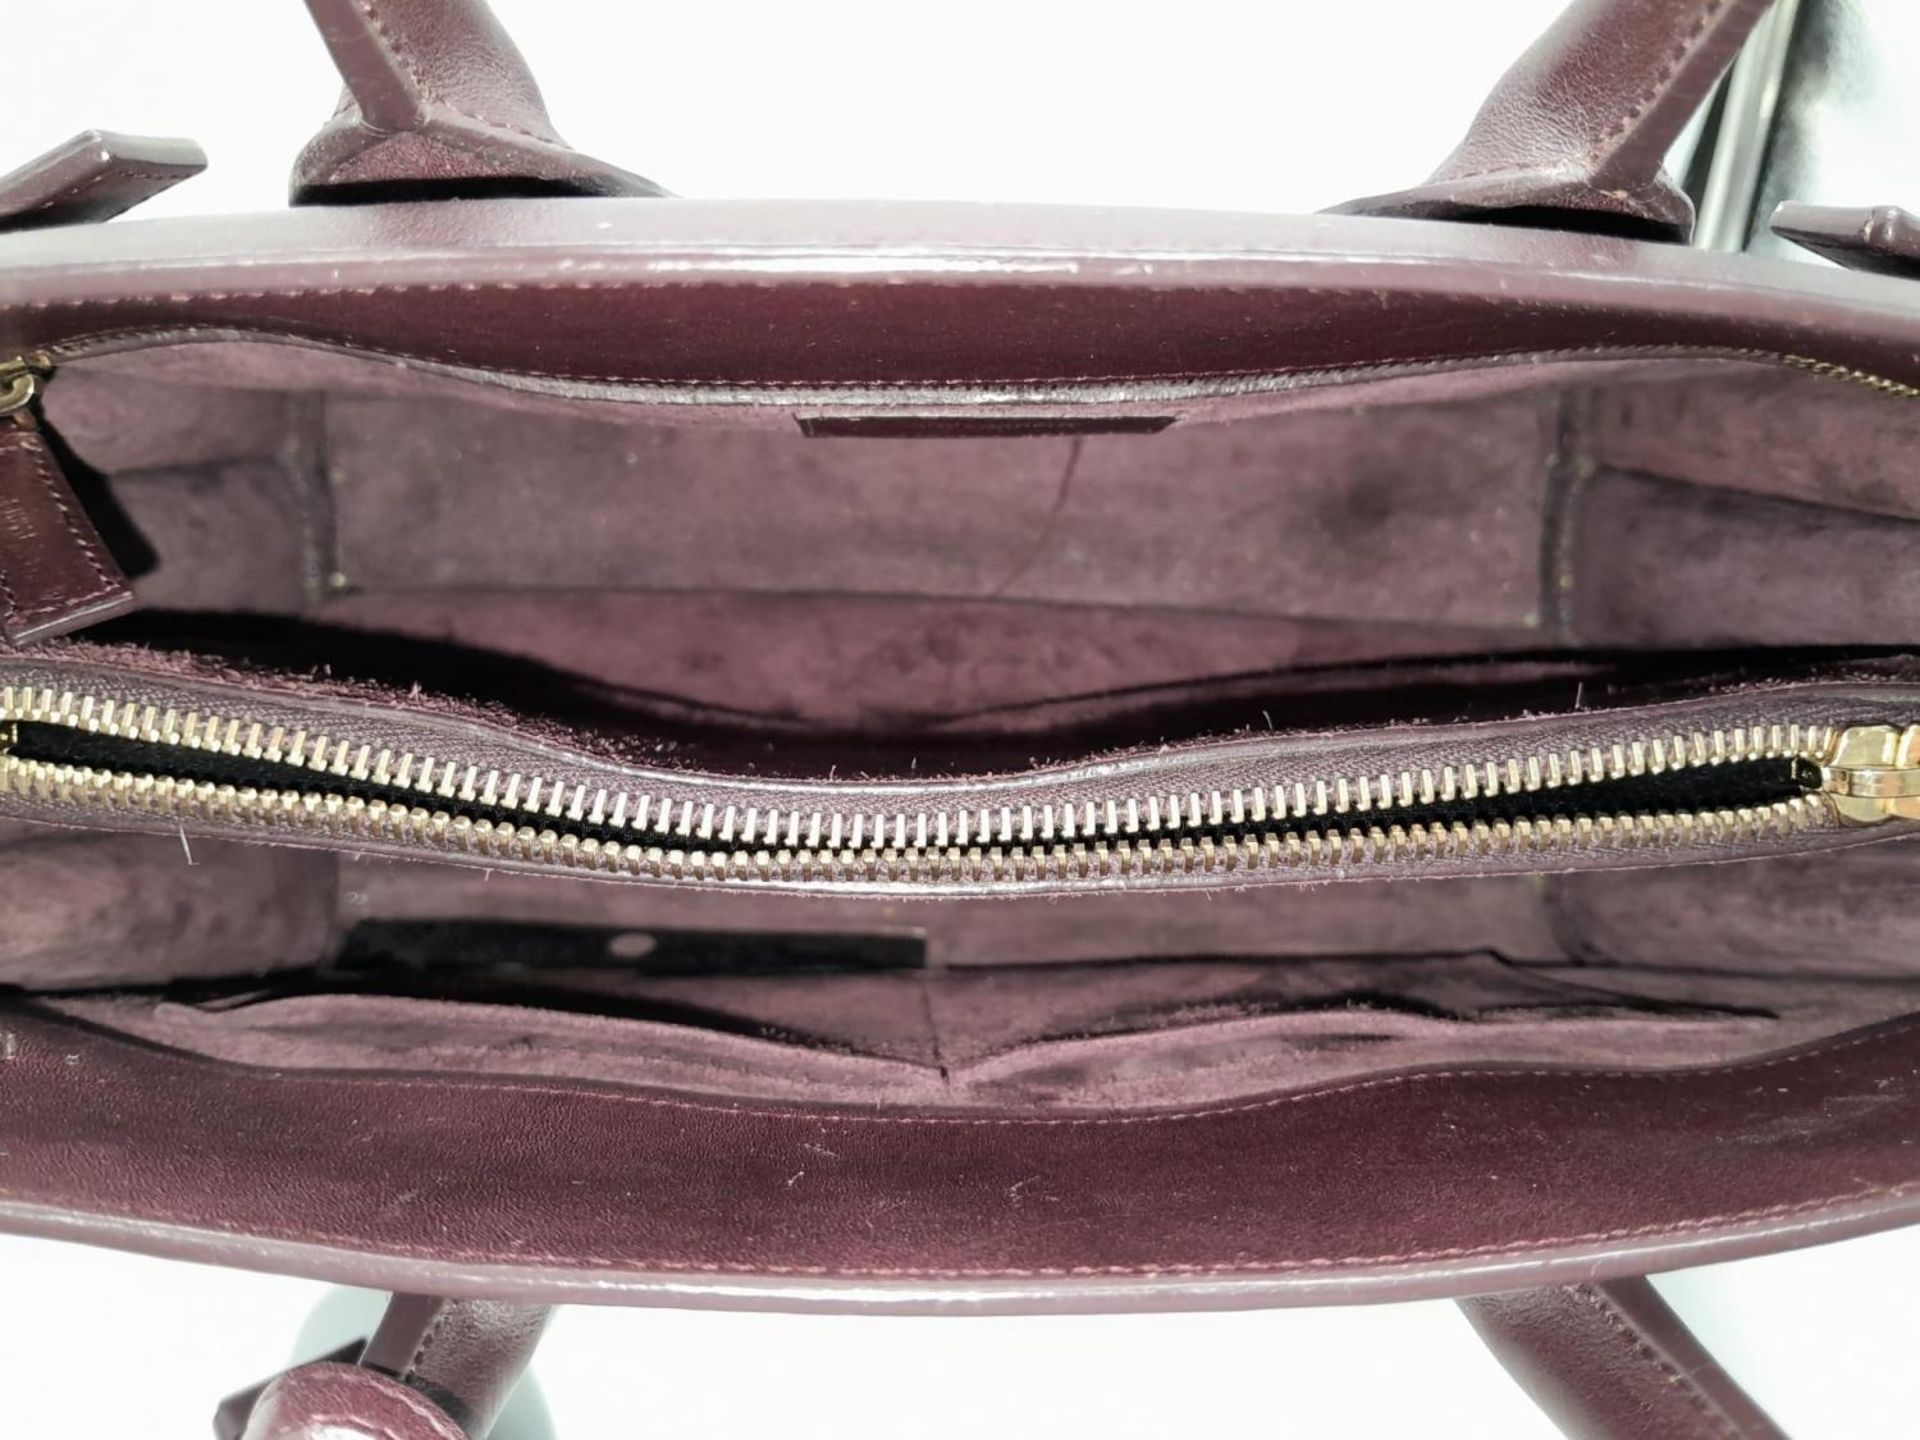 A Saint Laurent Sac De Jour Burgundy Handbag. Leather Exterior, Gold Tone Hardware, Double Handle in - Bild 5 aus 9